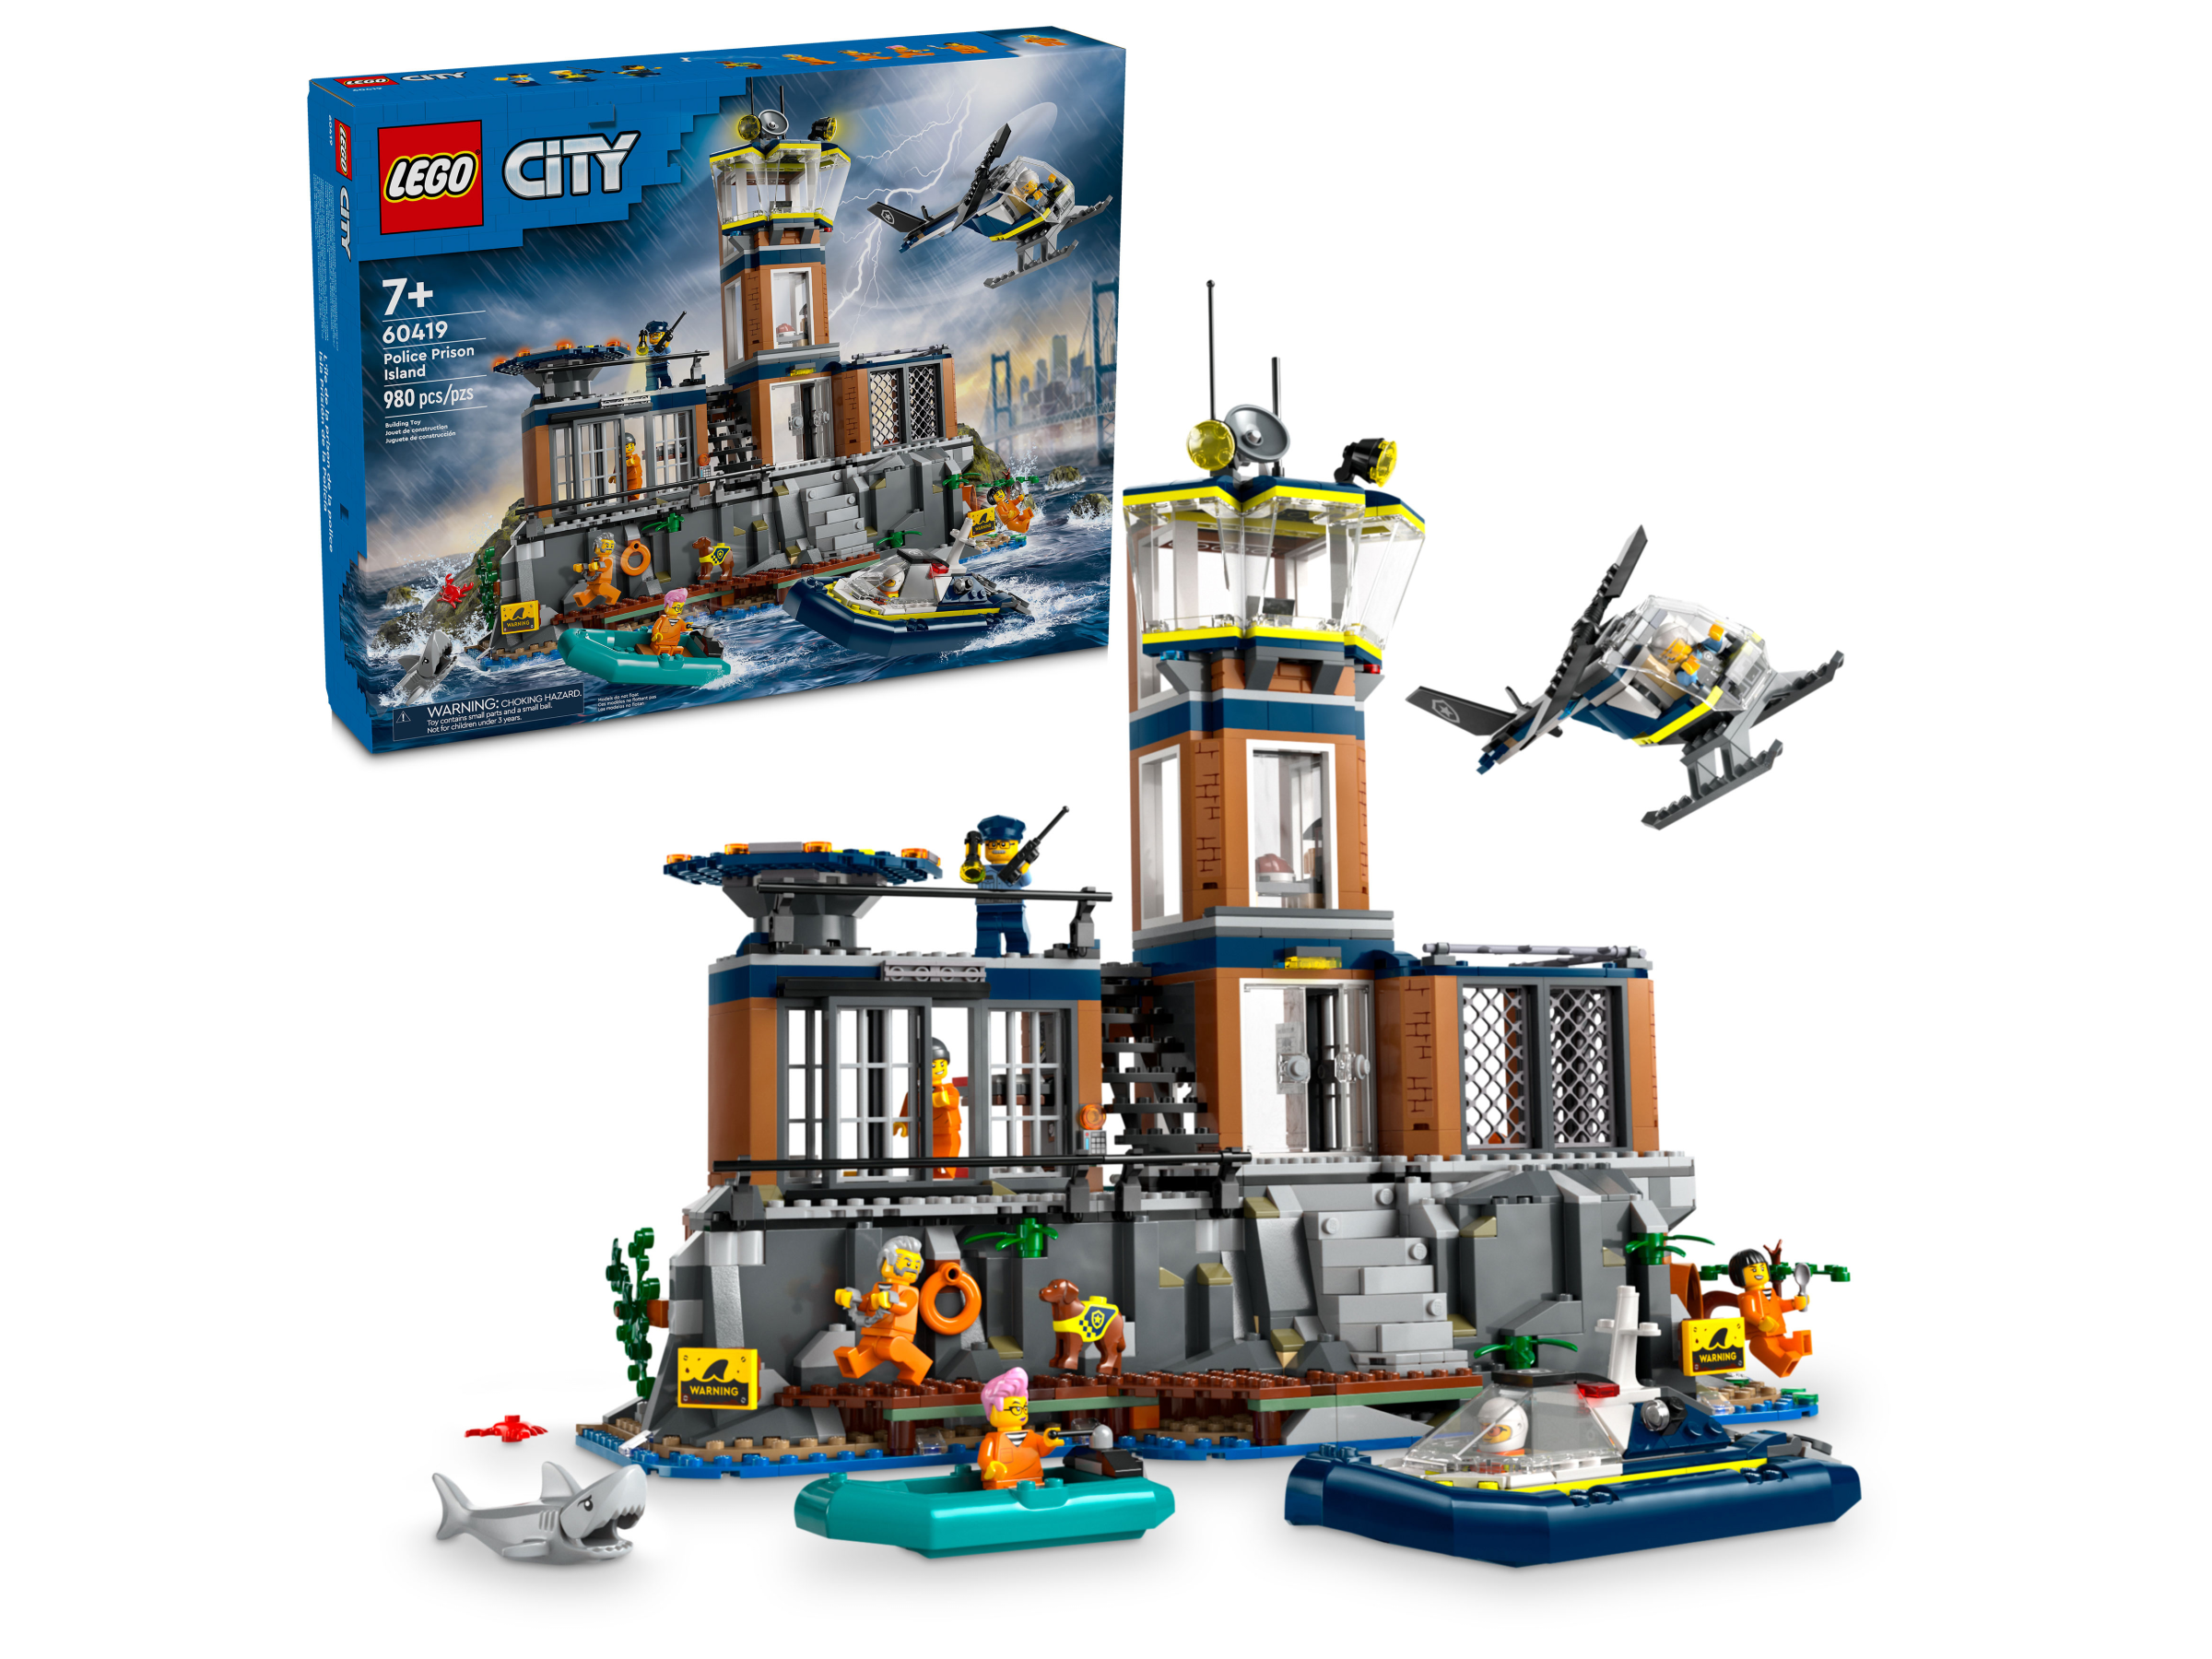  LEGO City Town Starter Set : Toys & Games